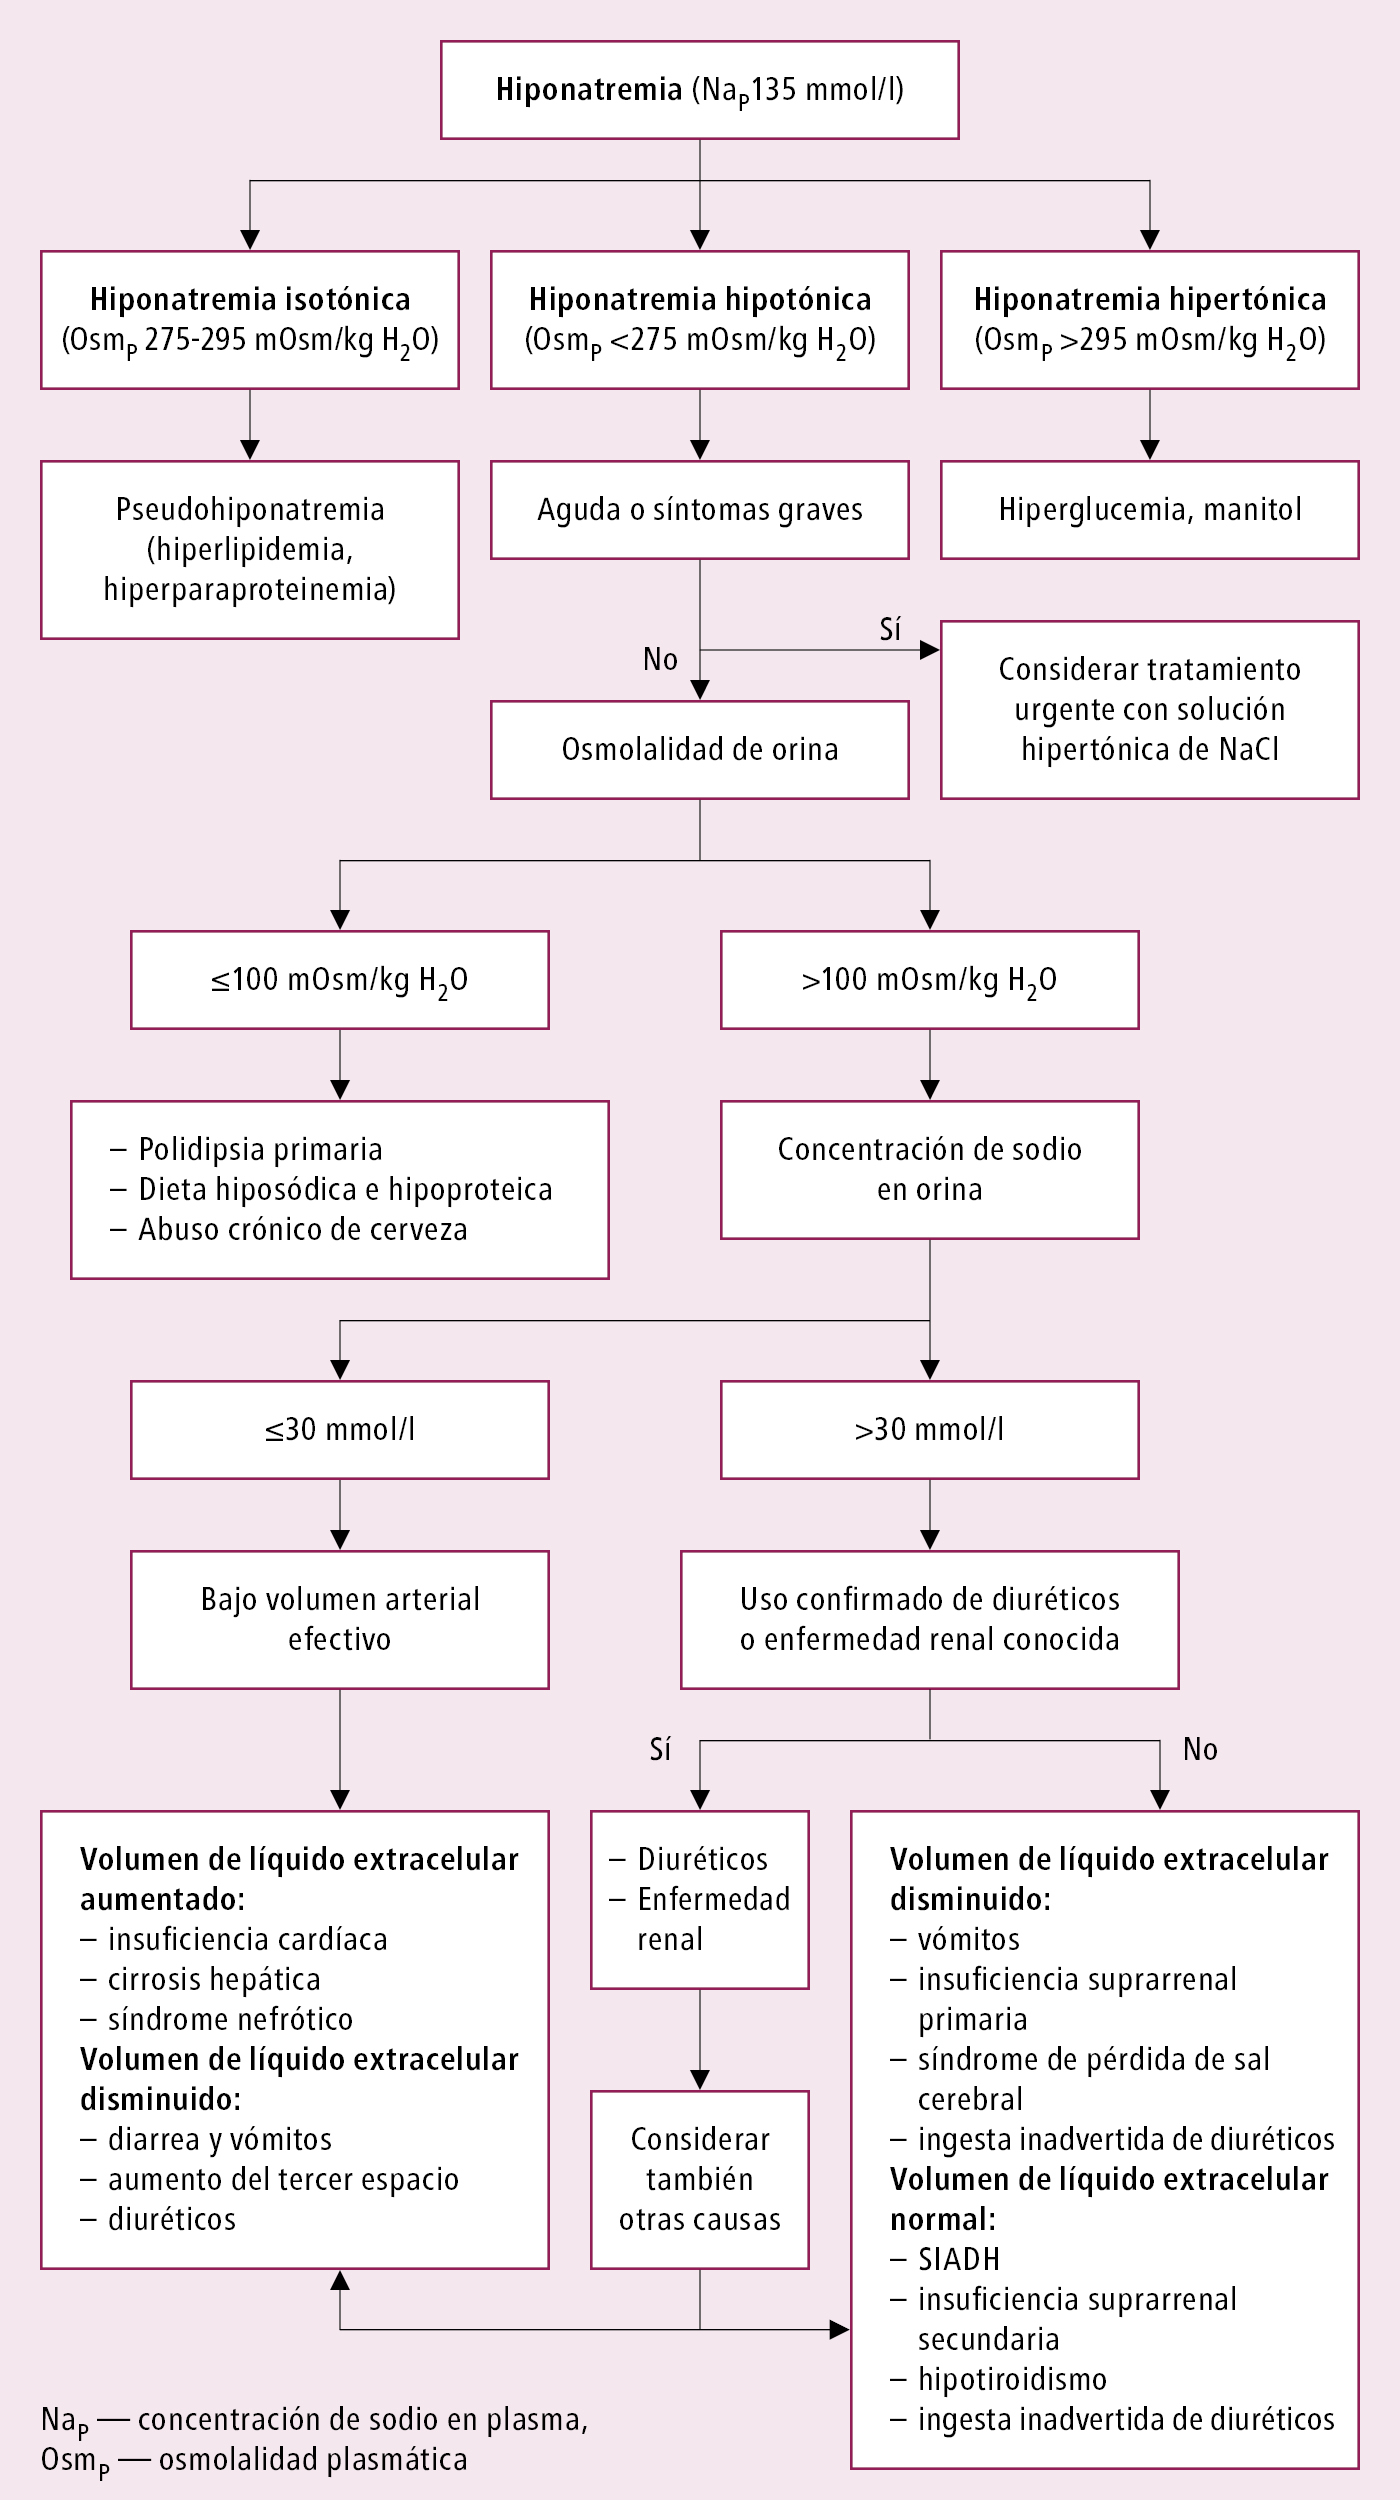    Fig. 20.1-1.  Algoritmo diagnóstico de la hiponatremia 